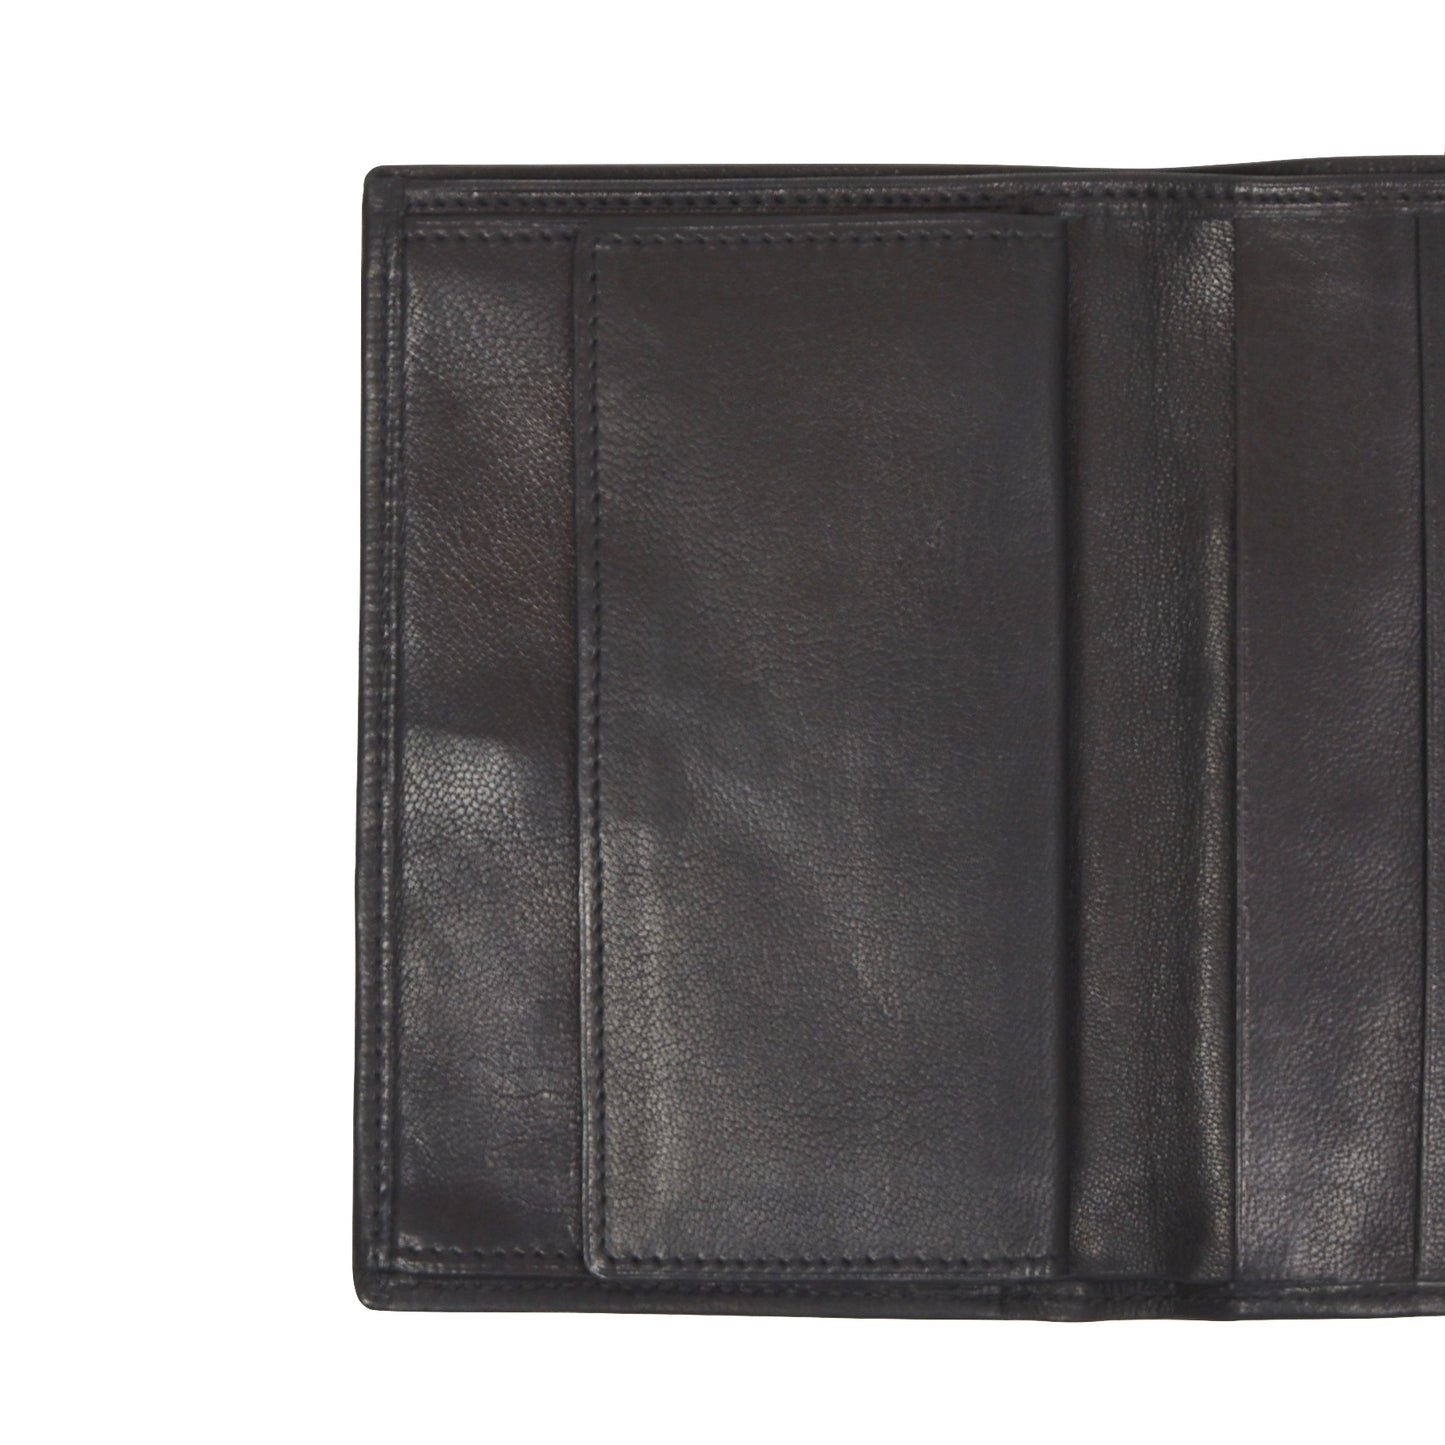 F. Schulz Wien Leather Snap Wallet - Black